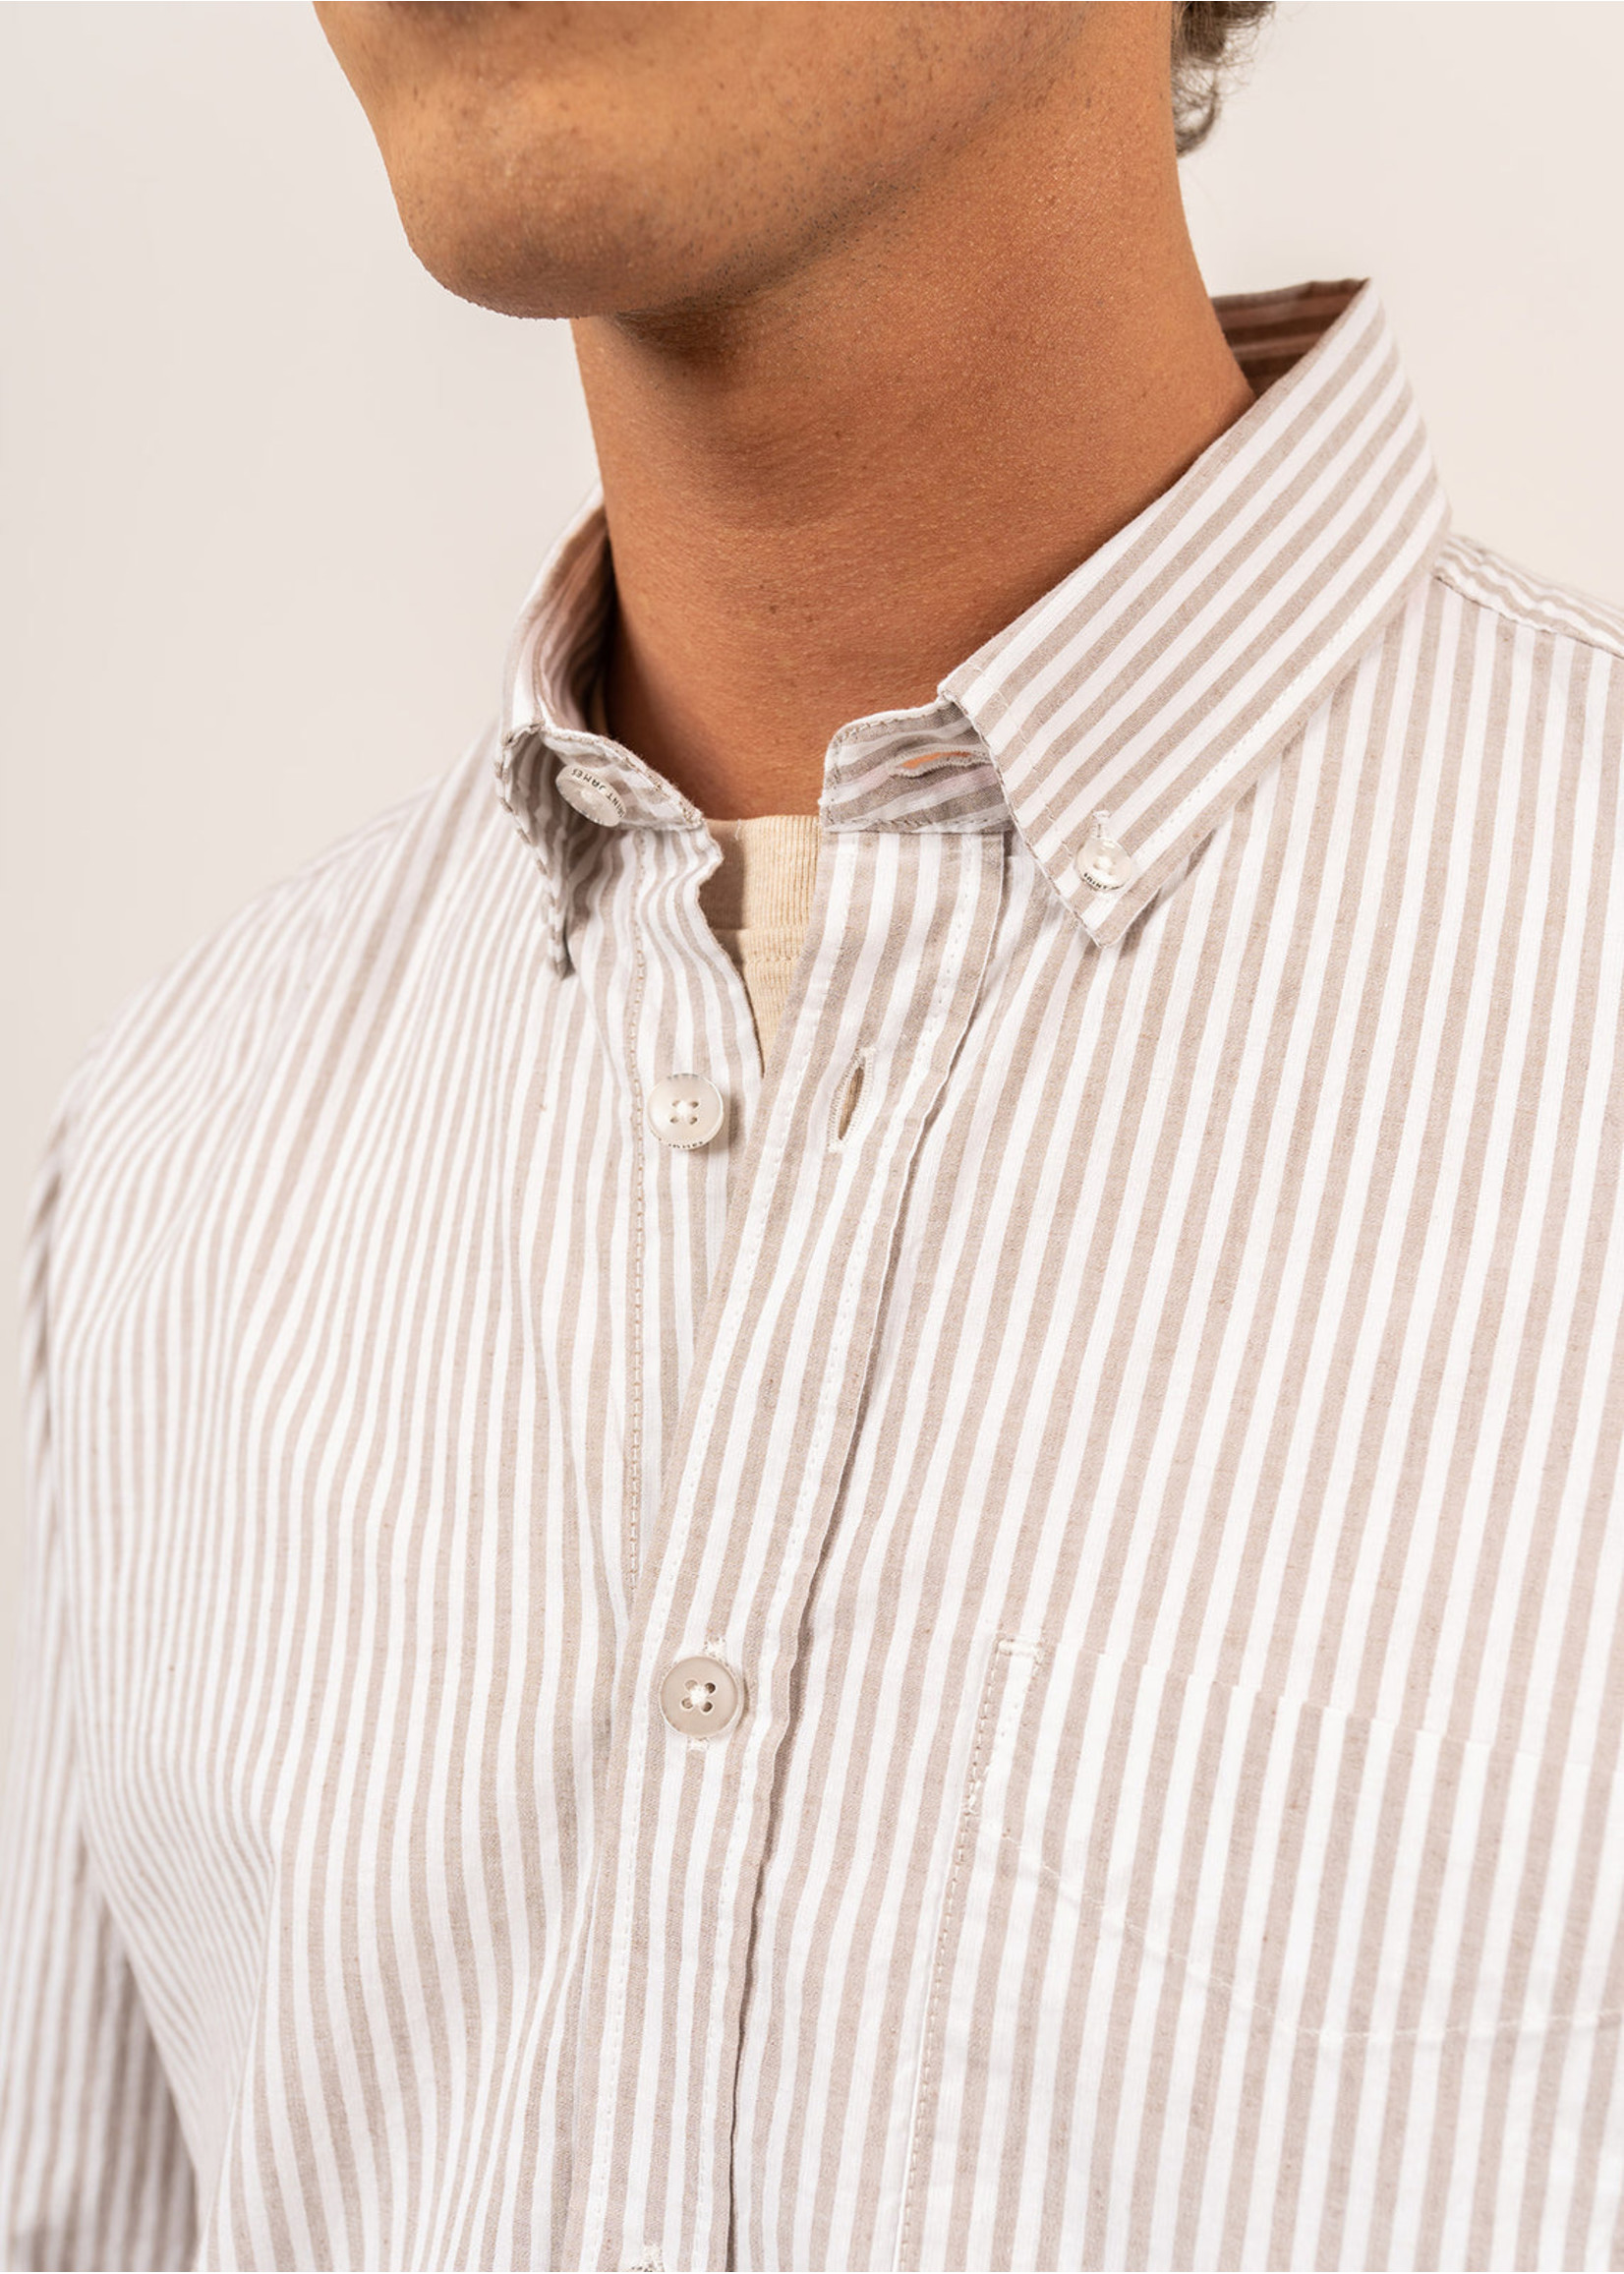 SAINT-JAMES Men's Mathias cotton and linen striped shirt